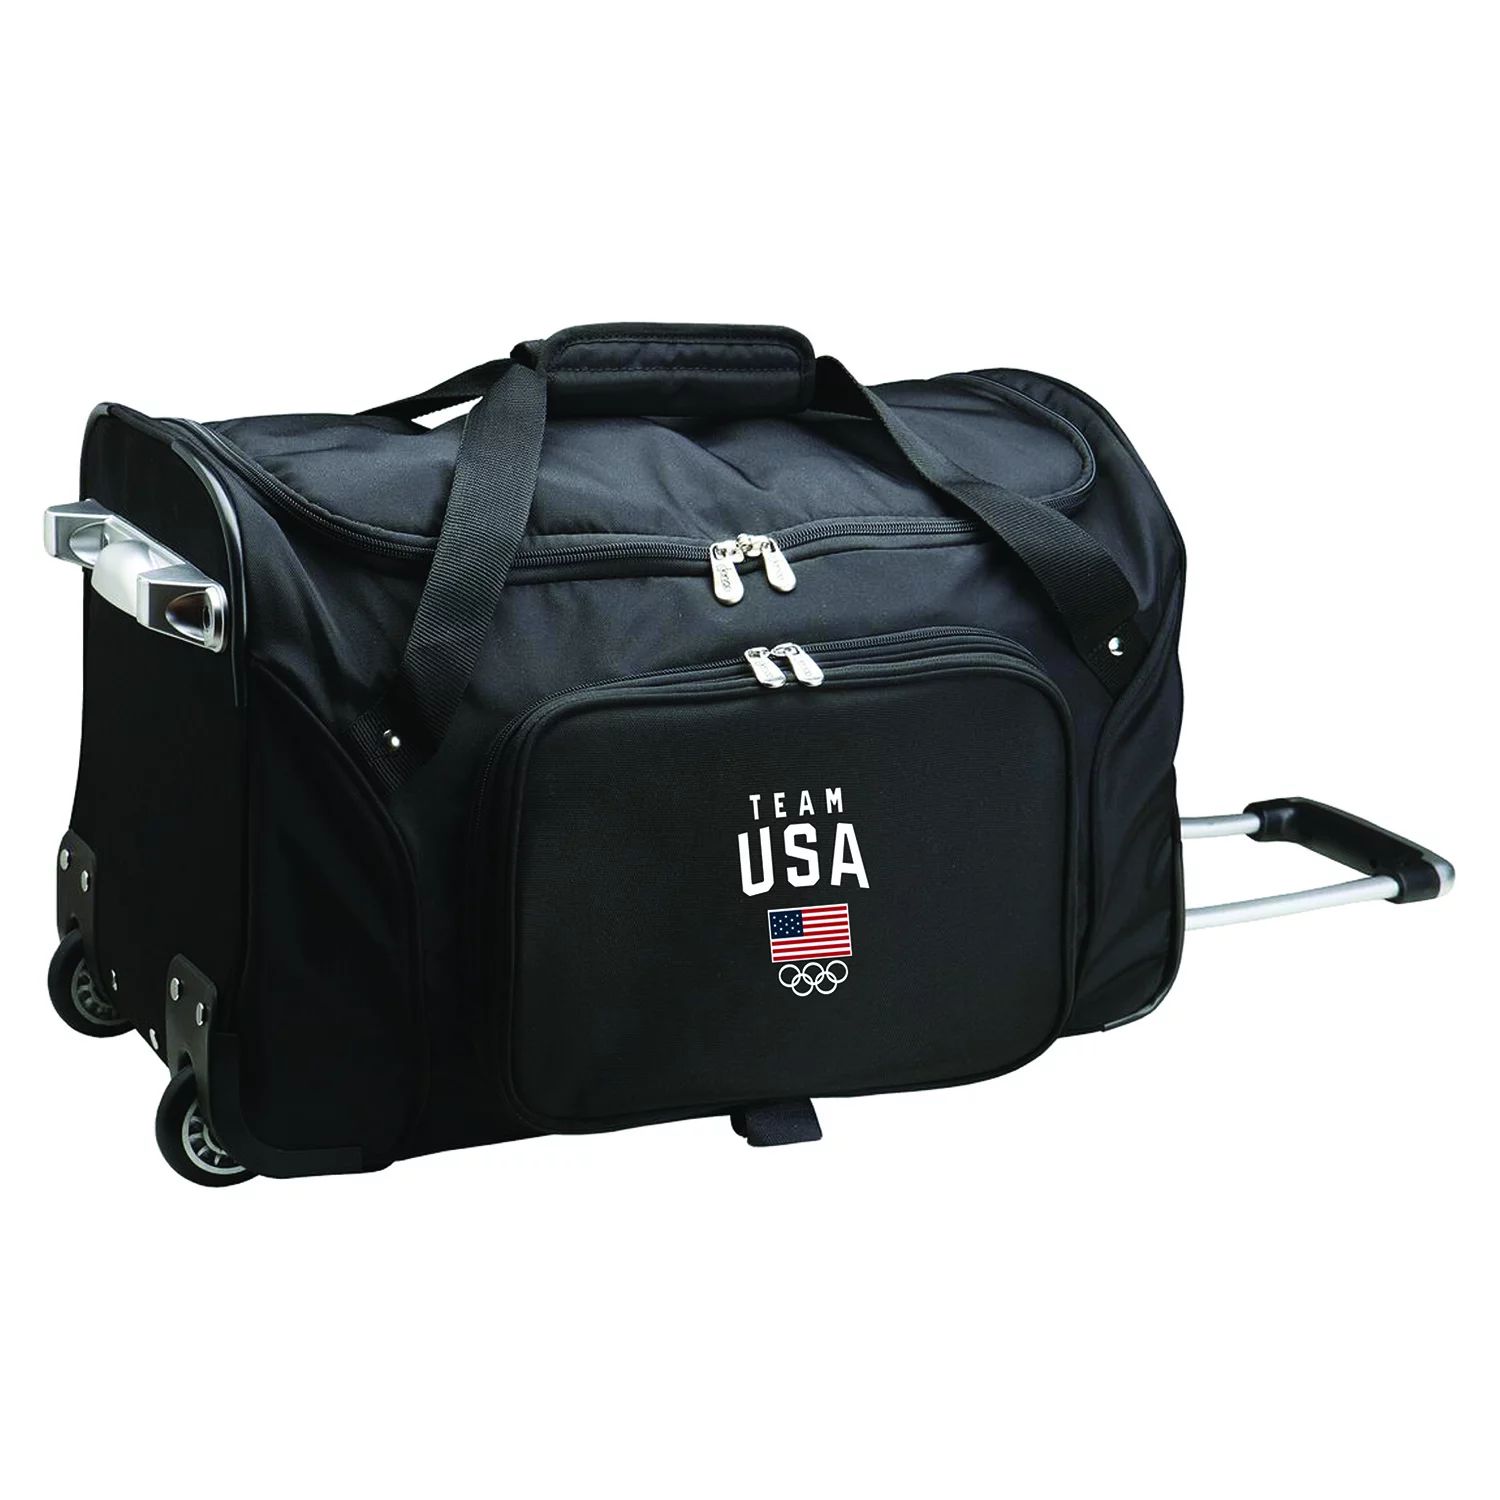 Спортивная сумка Denco на колесиках для олимпийской сборной США, 21 дюйм Denco